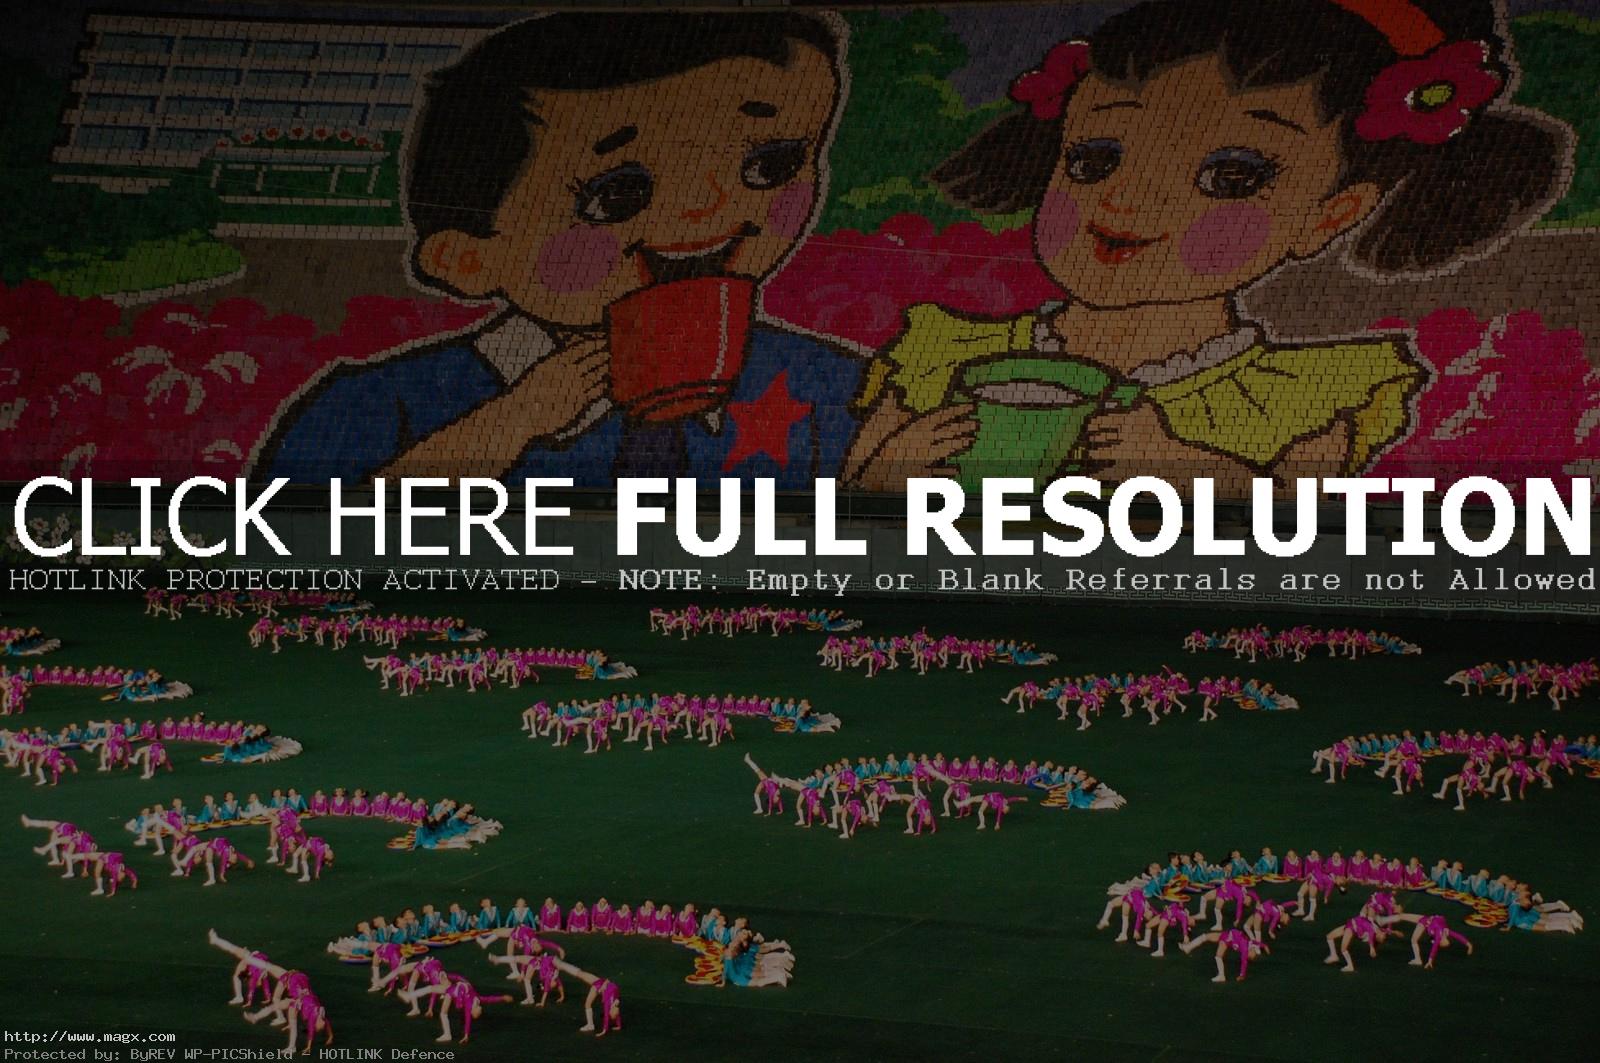 arirang8 North Korea   Arirang Festival aka Mass Games